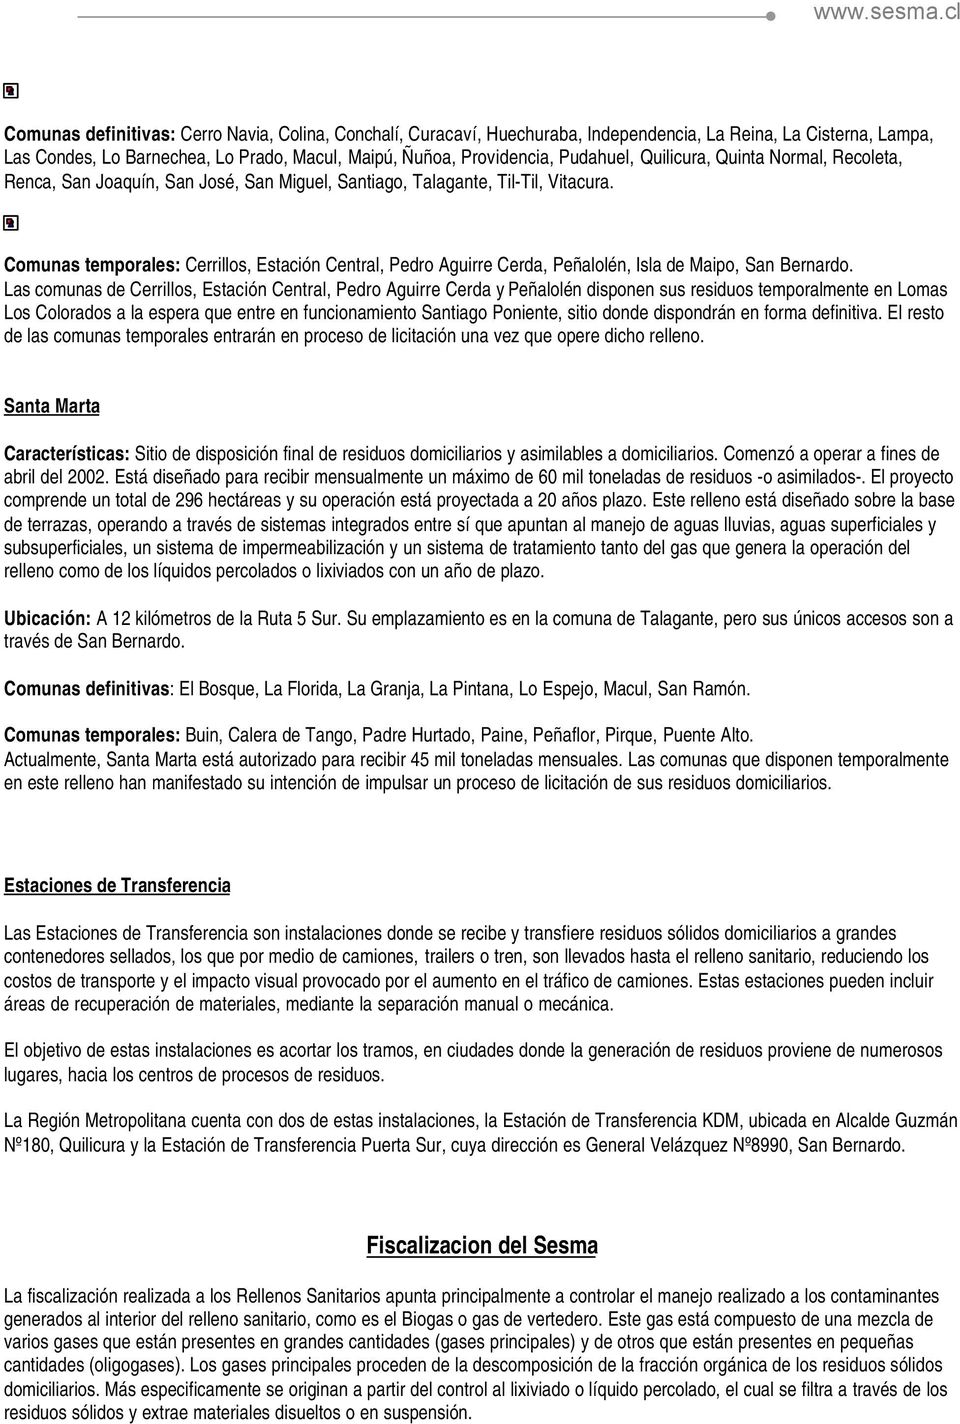 Comunas temporales: Cerrillos, Estación Central, Pedro Aguirre Cerda, Peñalolén, Isla de Maipo, San Bernardo.